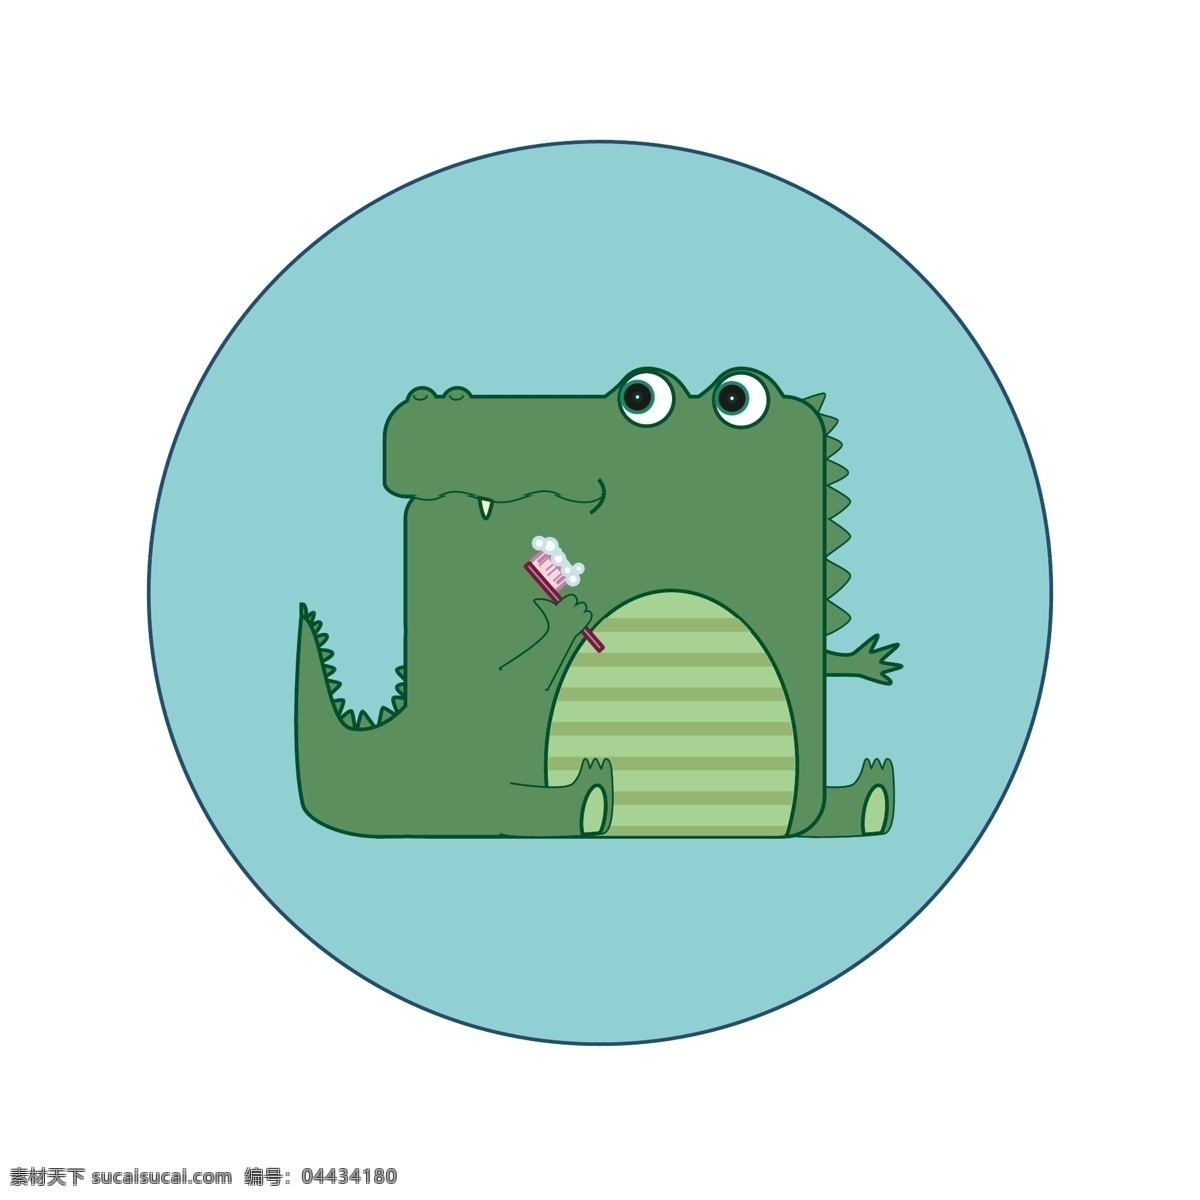 趣味 卡通 扁平化 方形 动物 小 鳄鱼 形象 插图 元素 插画 可爱 动物形象 小鳄鱼 刷牙 冷色